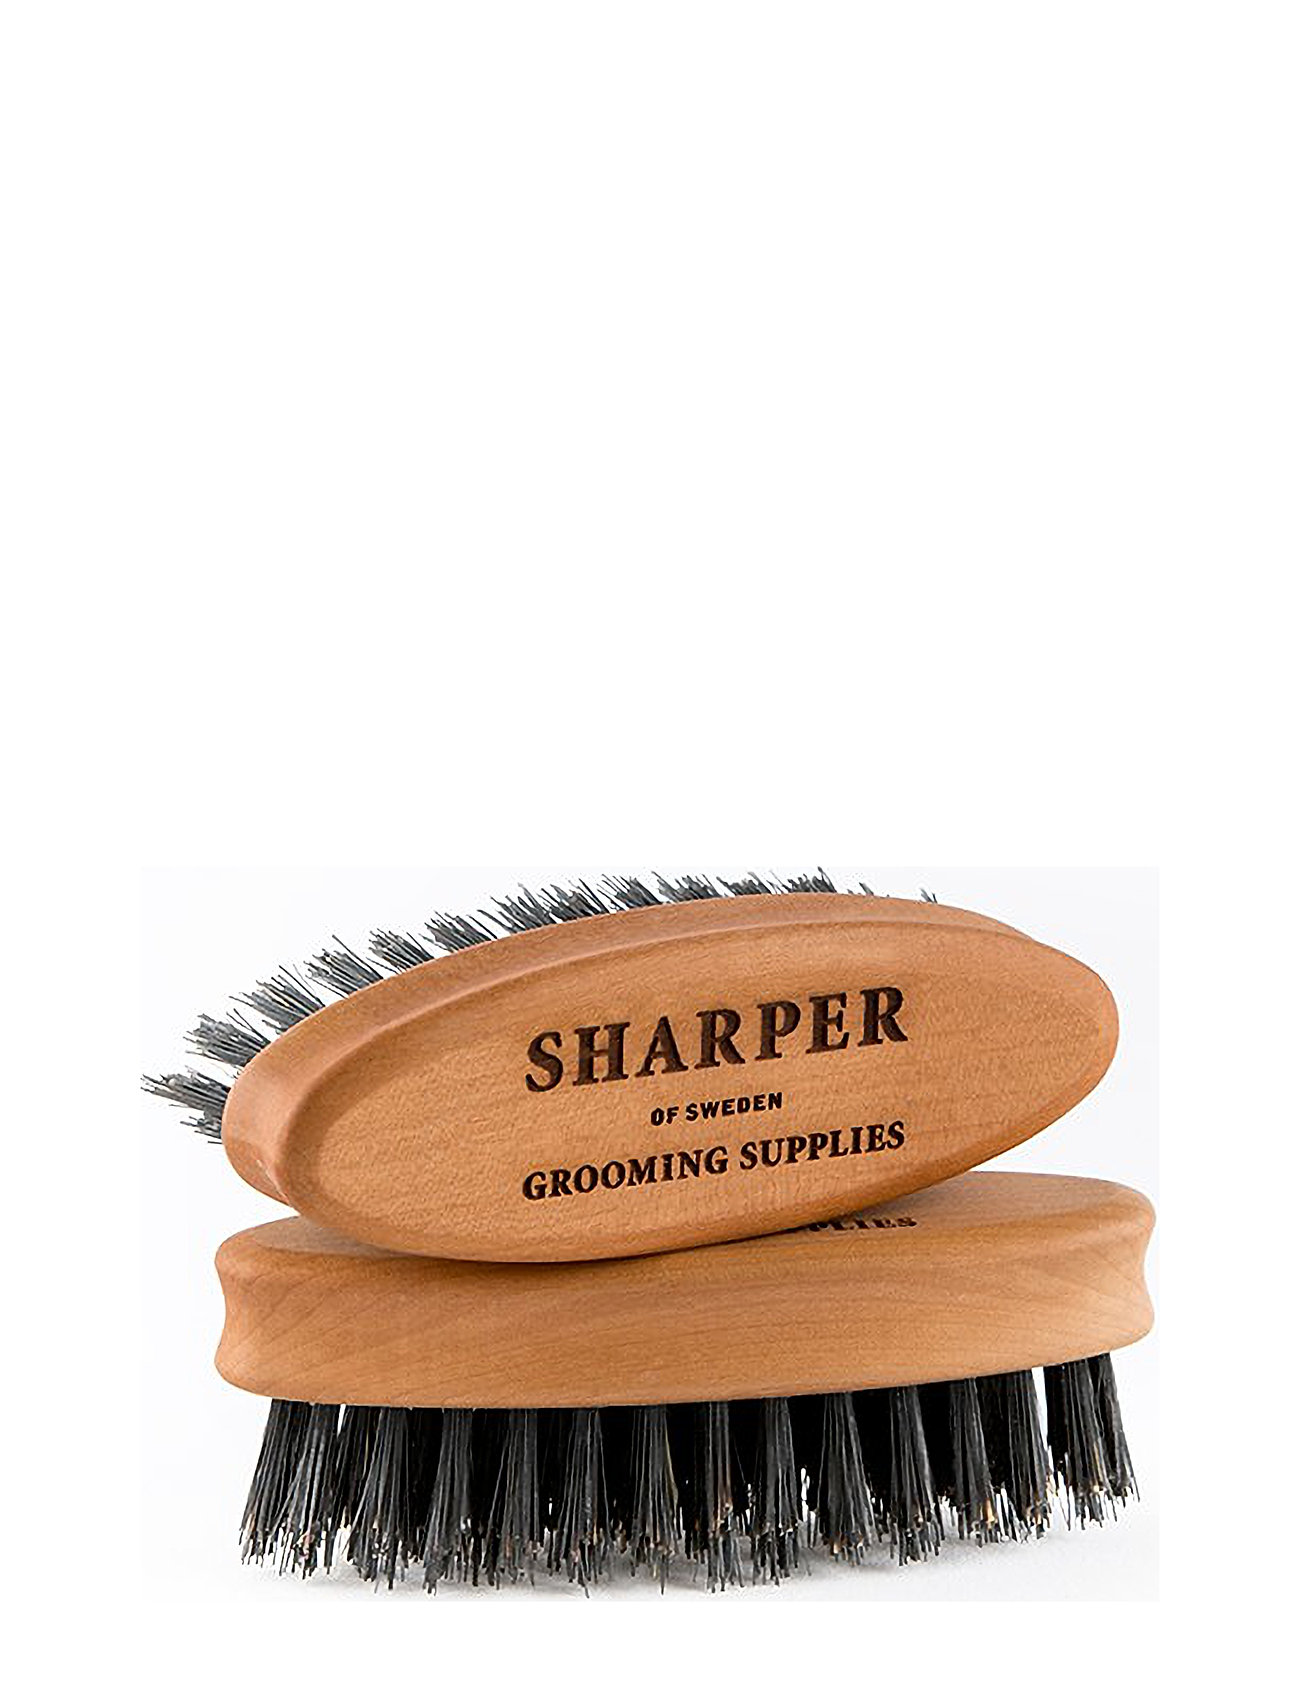 Sharper Beard Brush Travel Beauty Women All Sets Travel Nude Sharper Grooming